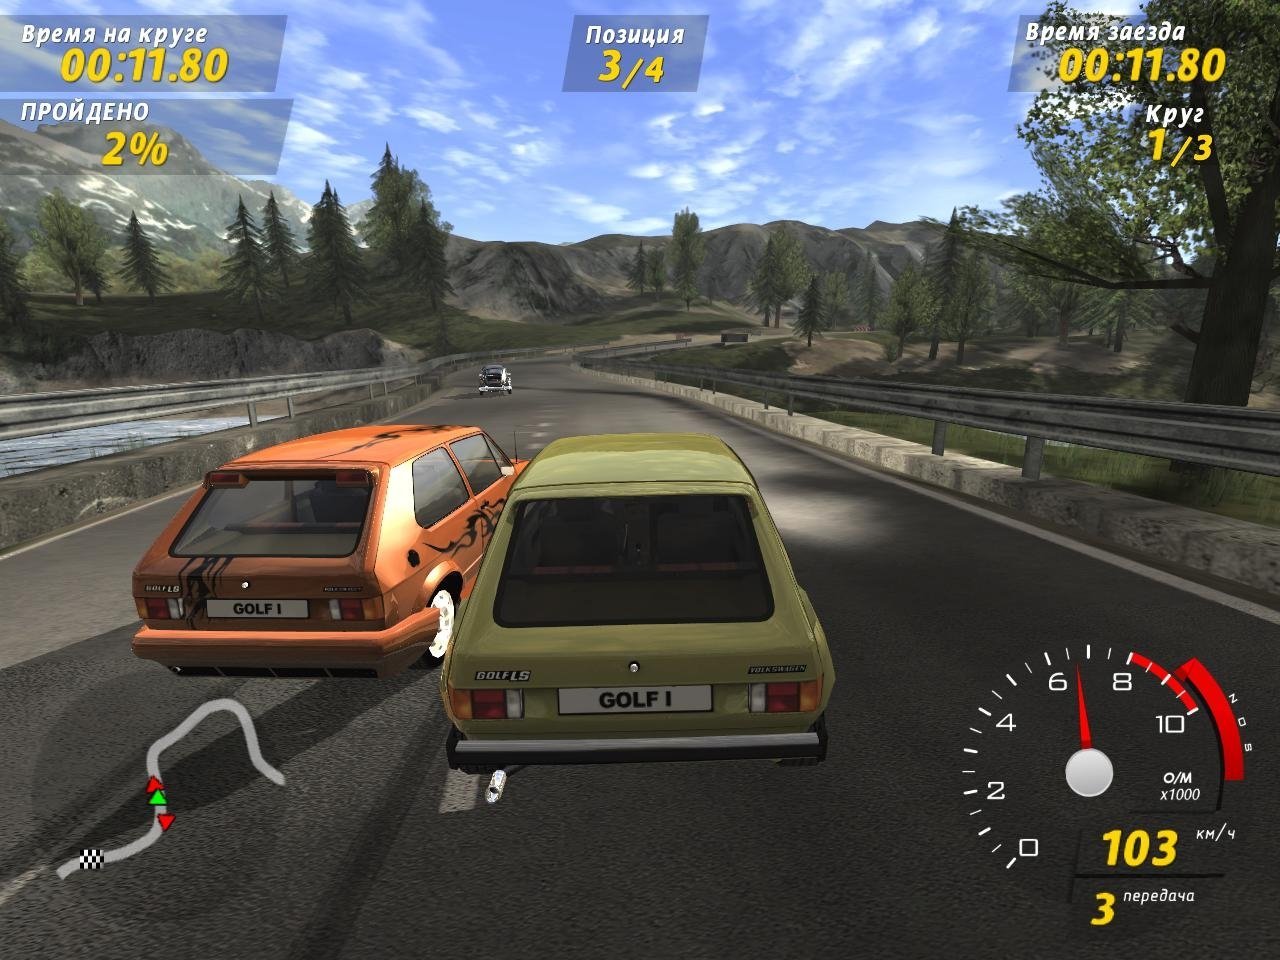 Игры про машины 1. Игра Volkswagen GTI Racing. GTI Racing Volkswagen Golf Racer. GTI Racing игра 2006. Русские гонки.